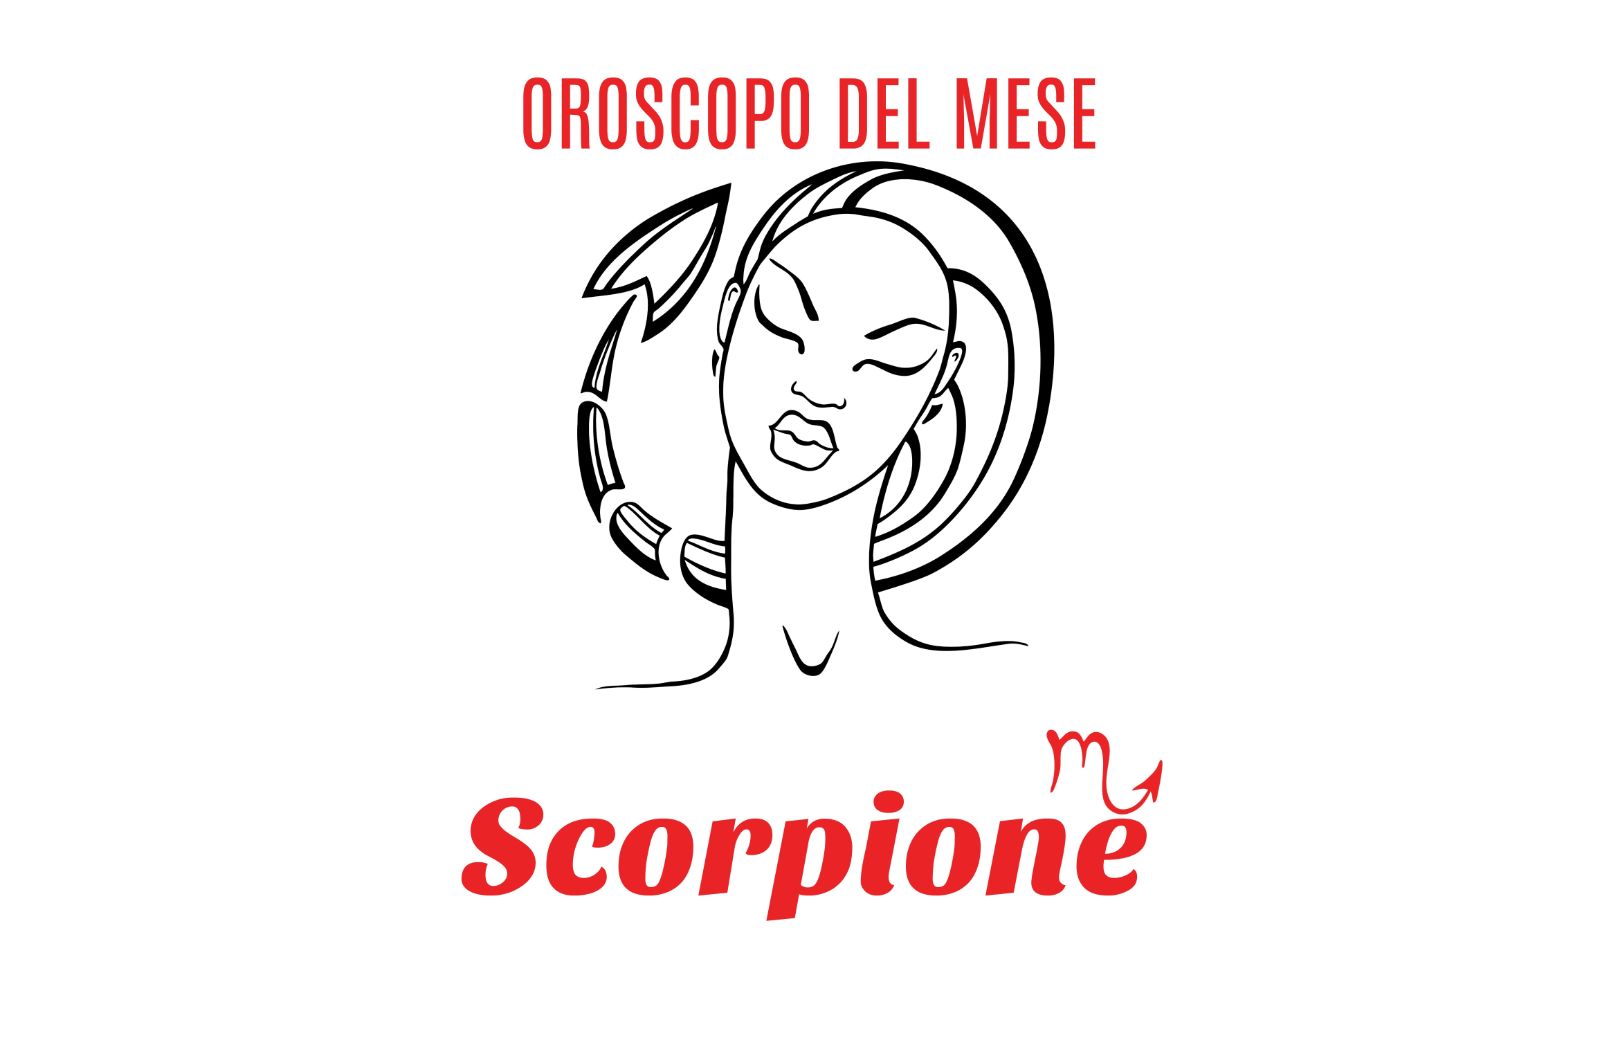 Oroscopo del mese: Scorpione - novembre 2020